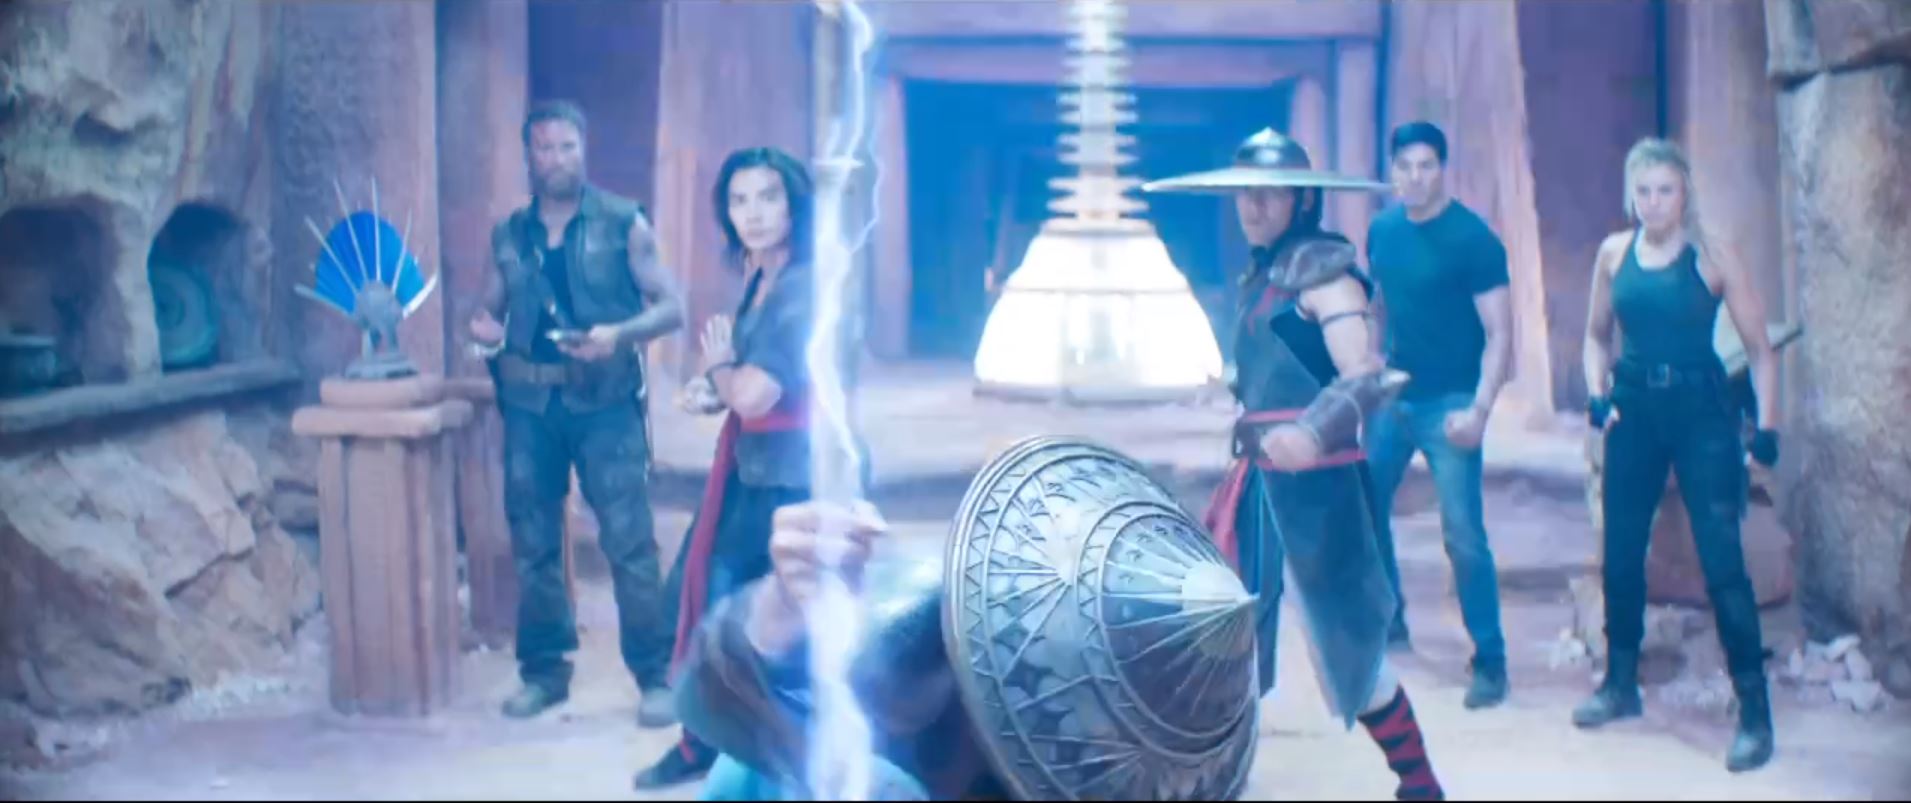 Filme de Mortal Kombat ganha primeiro trailer com personagens